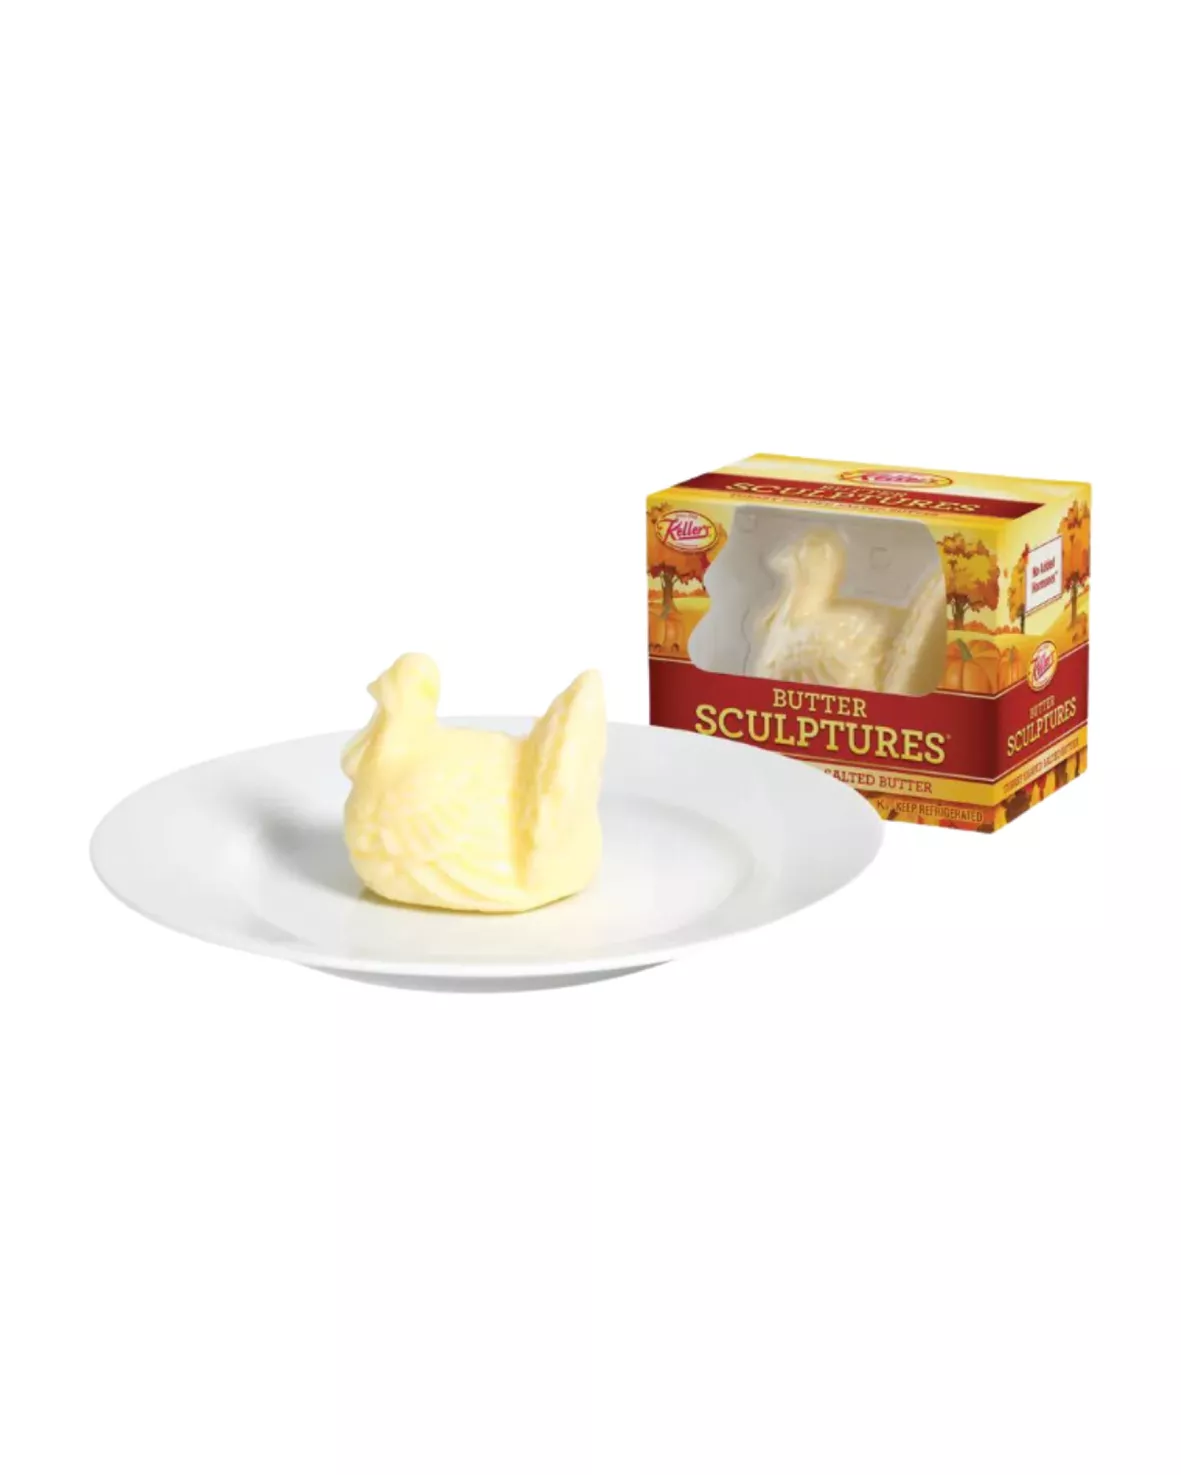 Keller's Butter Sculptures Turkey Shaped Butter, 4 Oz. 